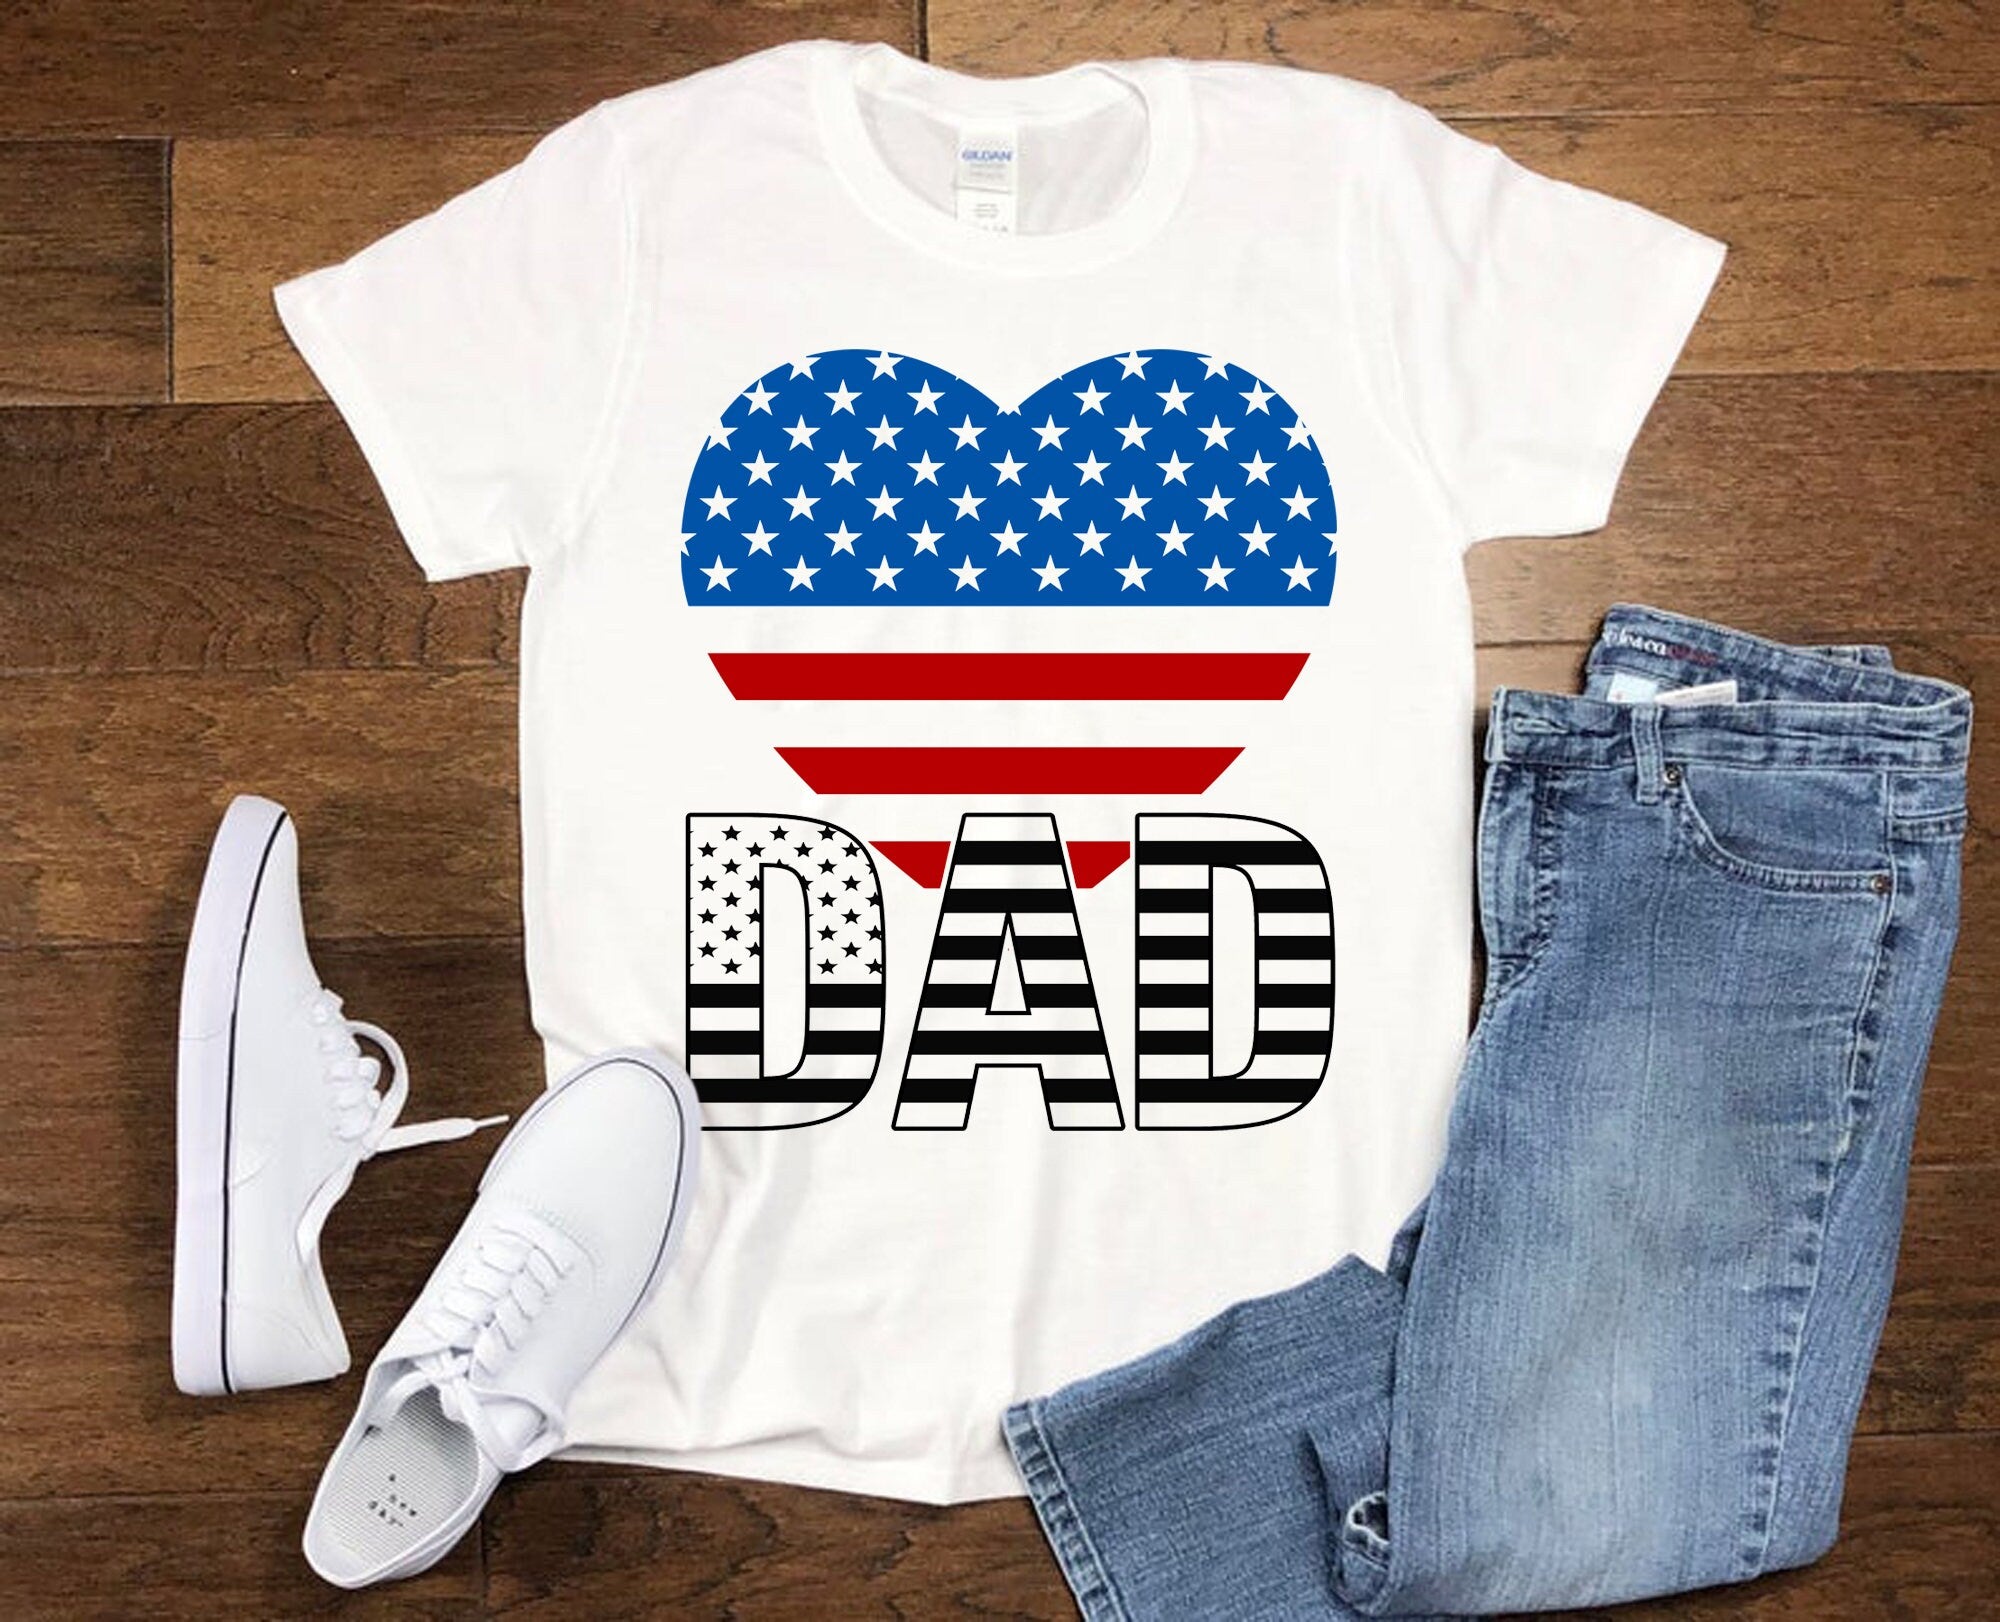 татко | Патриотично сърце | Тениски с американски флаг, червено бяло и синьо в сърцето, Честит празник на 4 юли - plusminusco.com